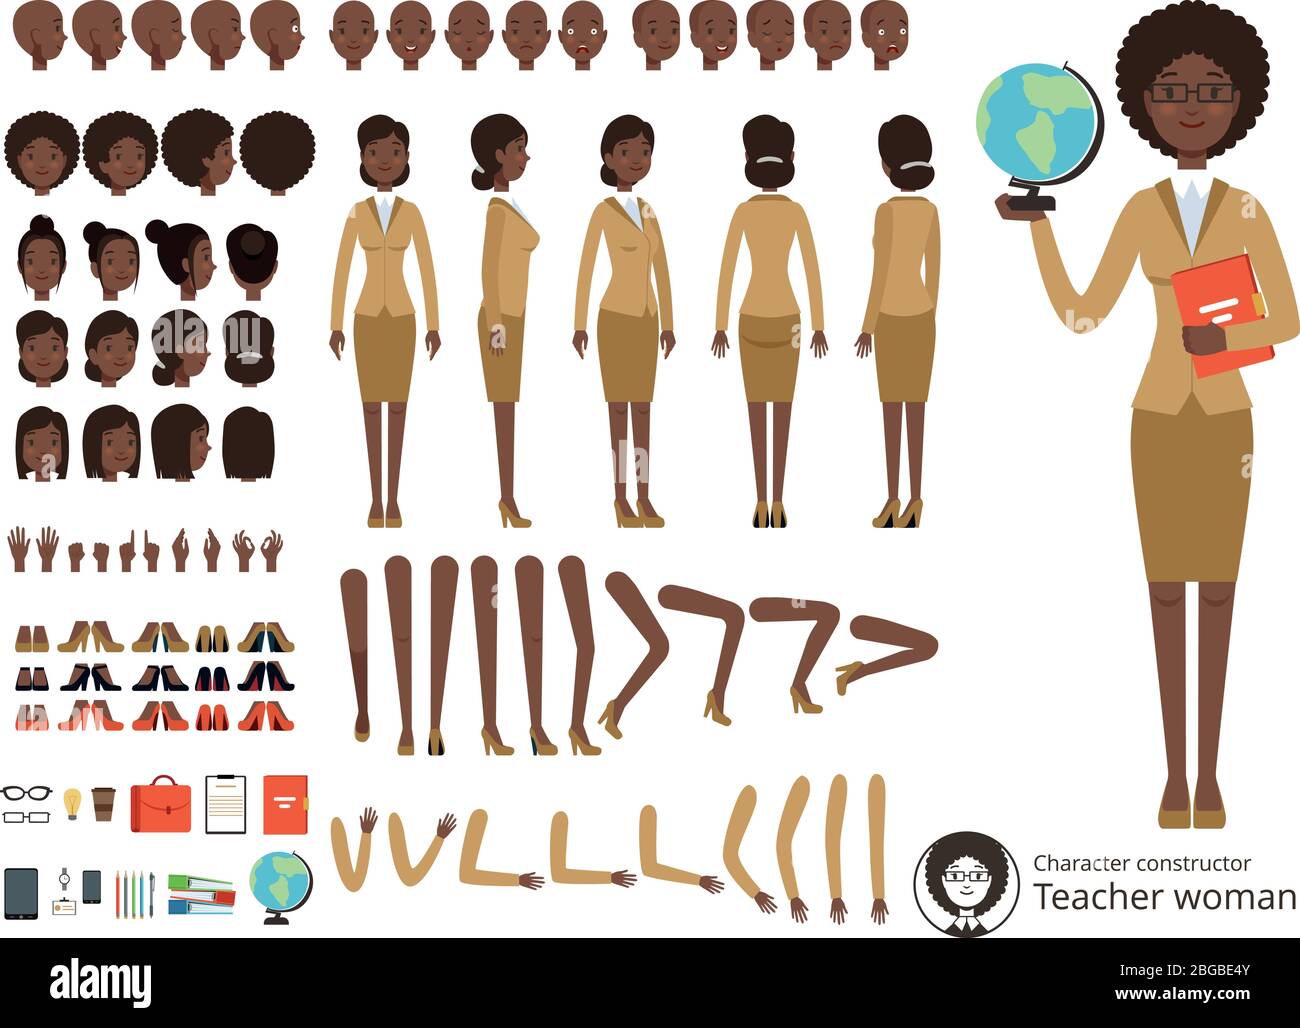 Vektor Konstruktor des weiblichen Charakters. Afroamerikanischer Lehrer zeigt. Vektor verschiedene Körperteile und Elemente gesetzt Stock Vektor